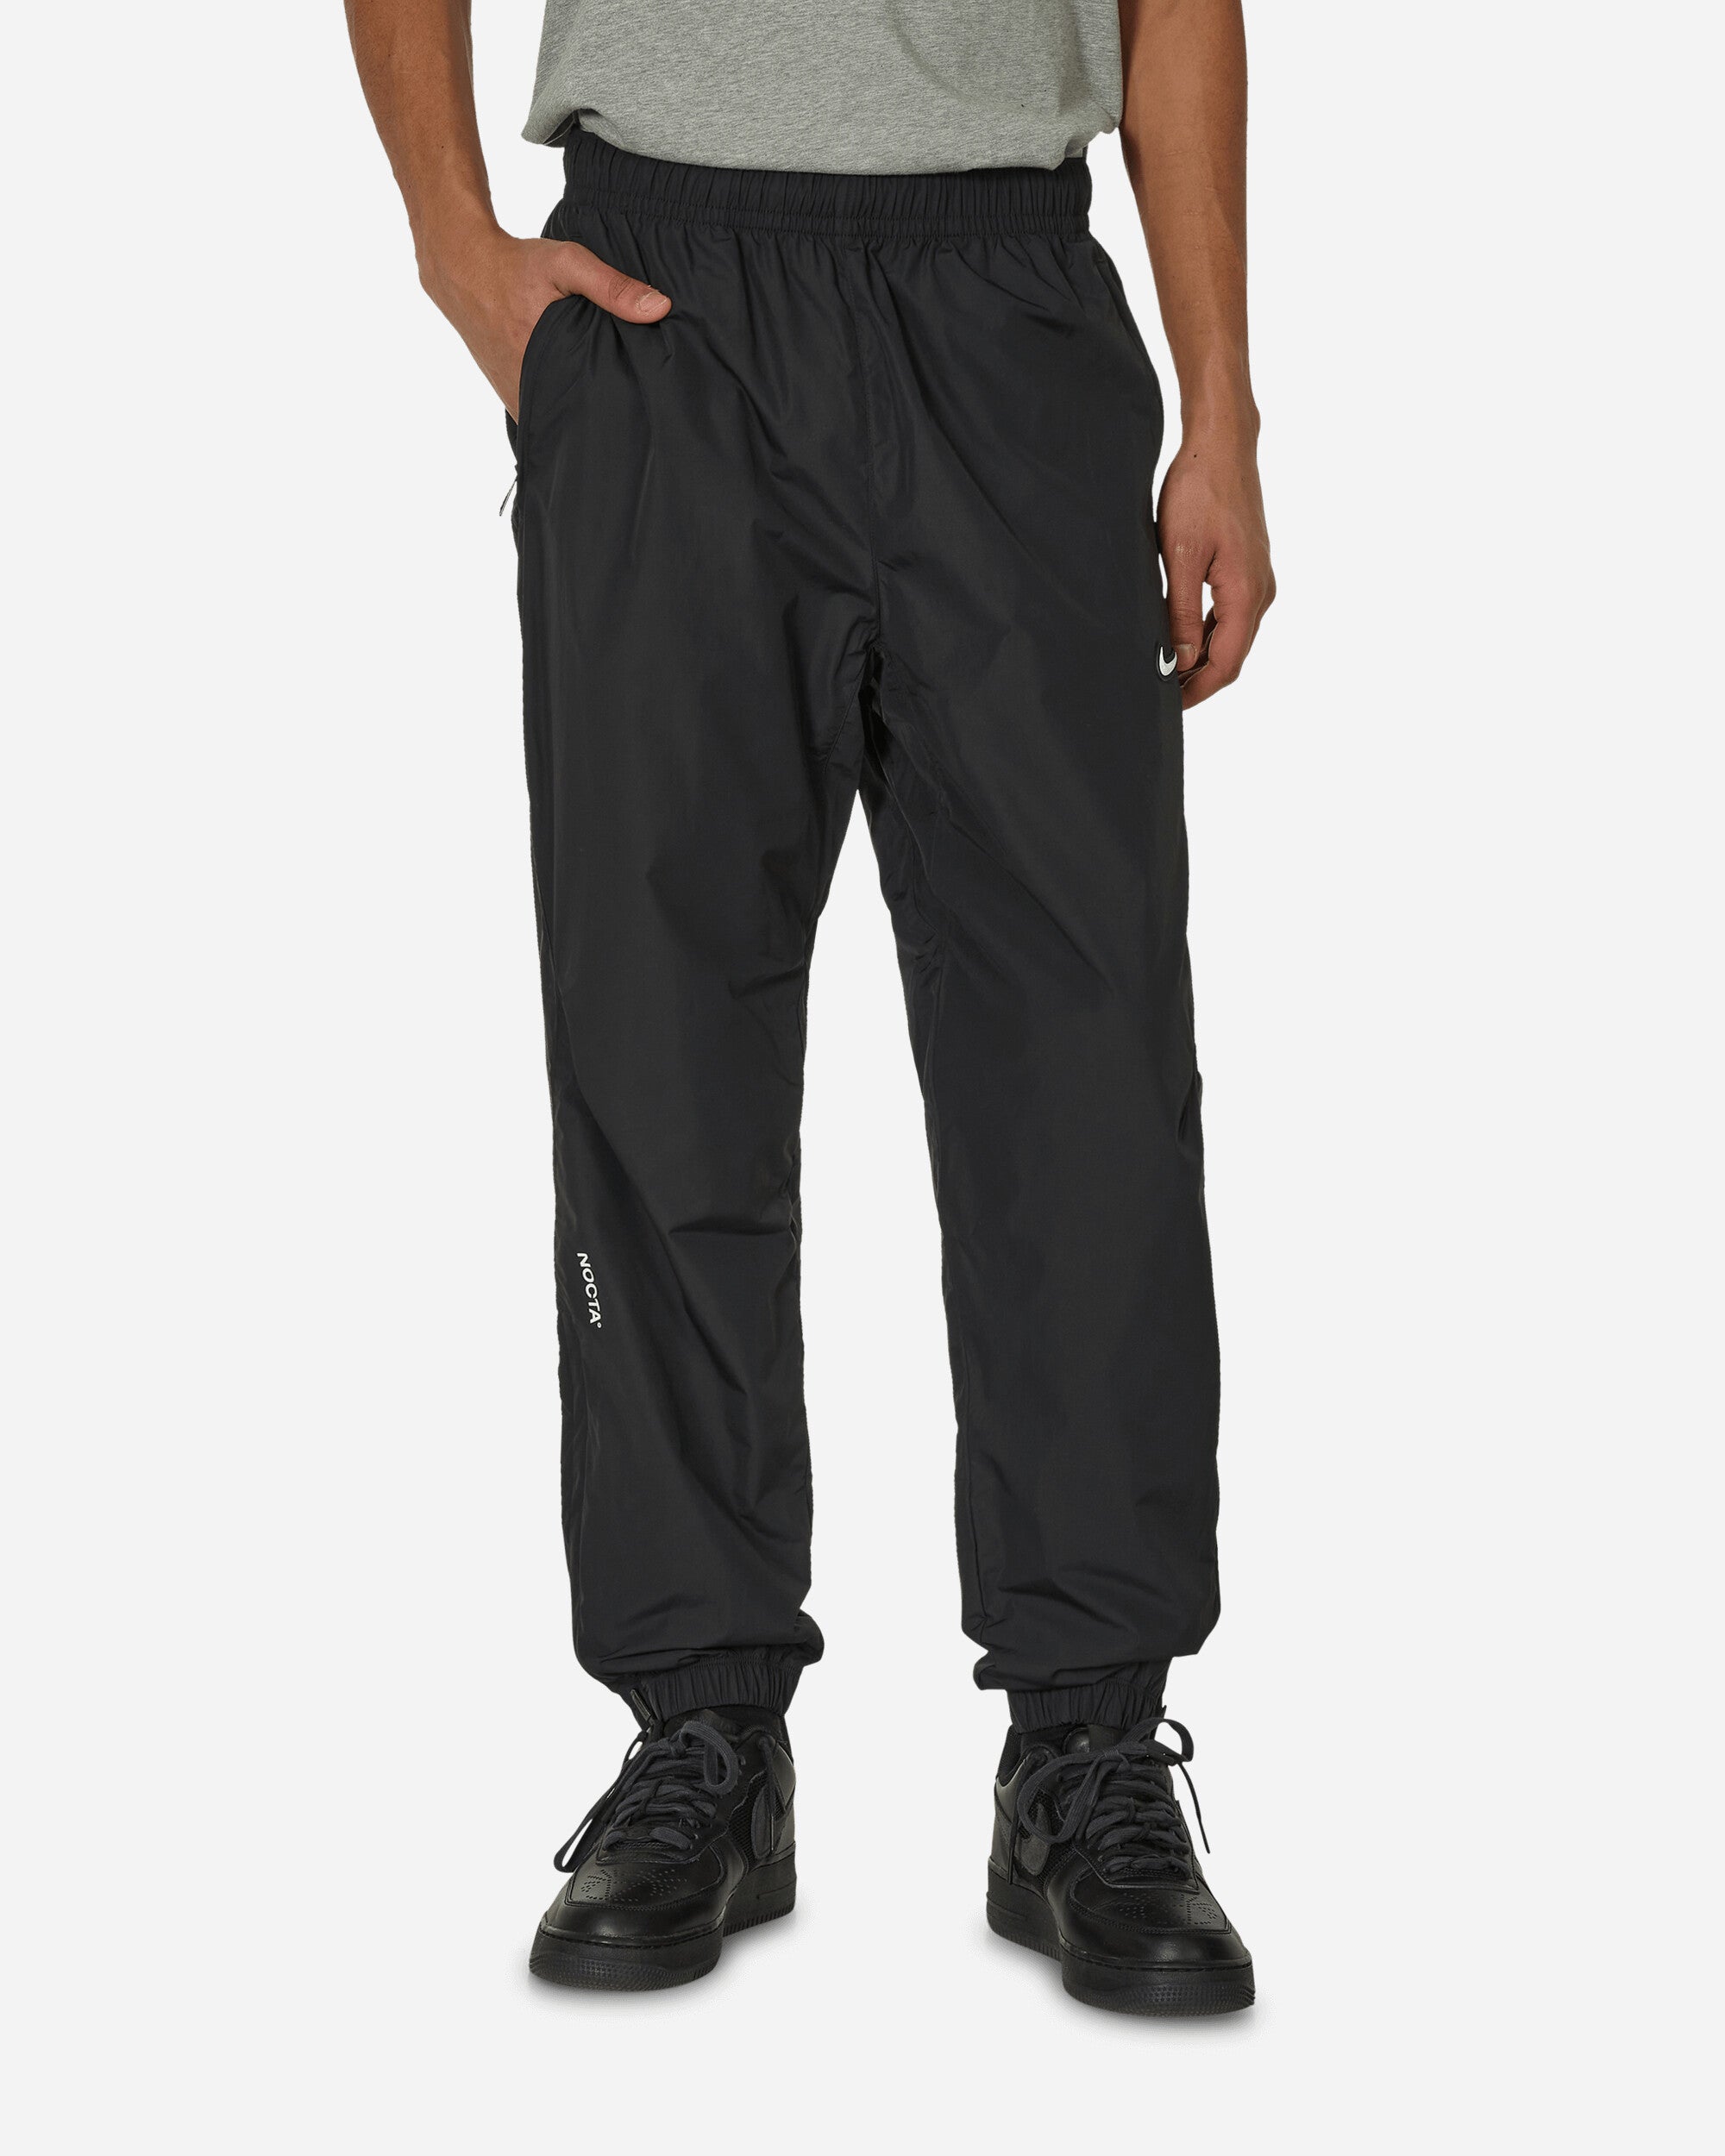 Nike x Drake NOCTA NRG Men's Woven Track Pants Black FN7668-010